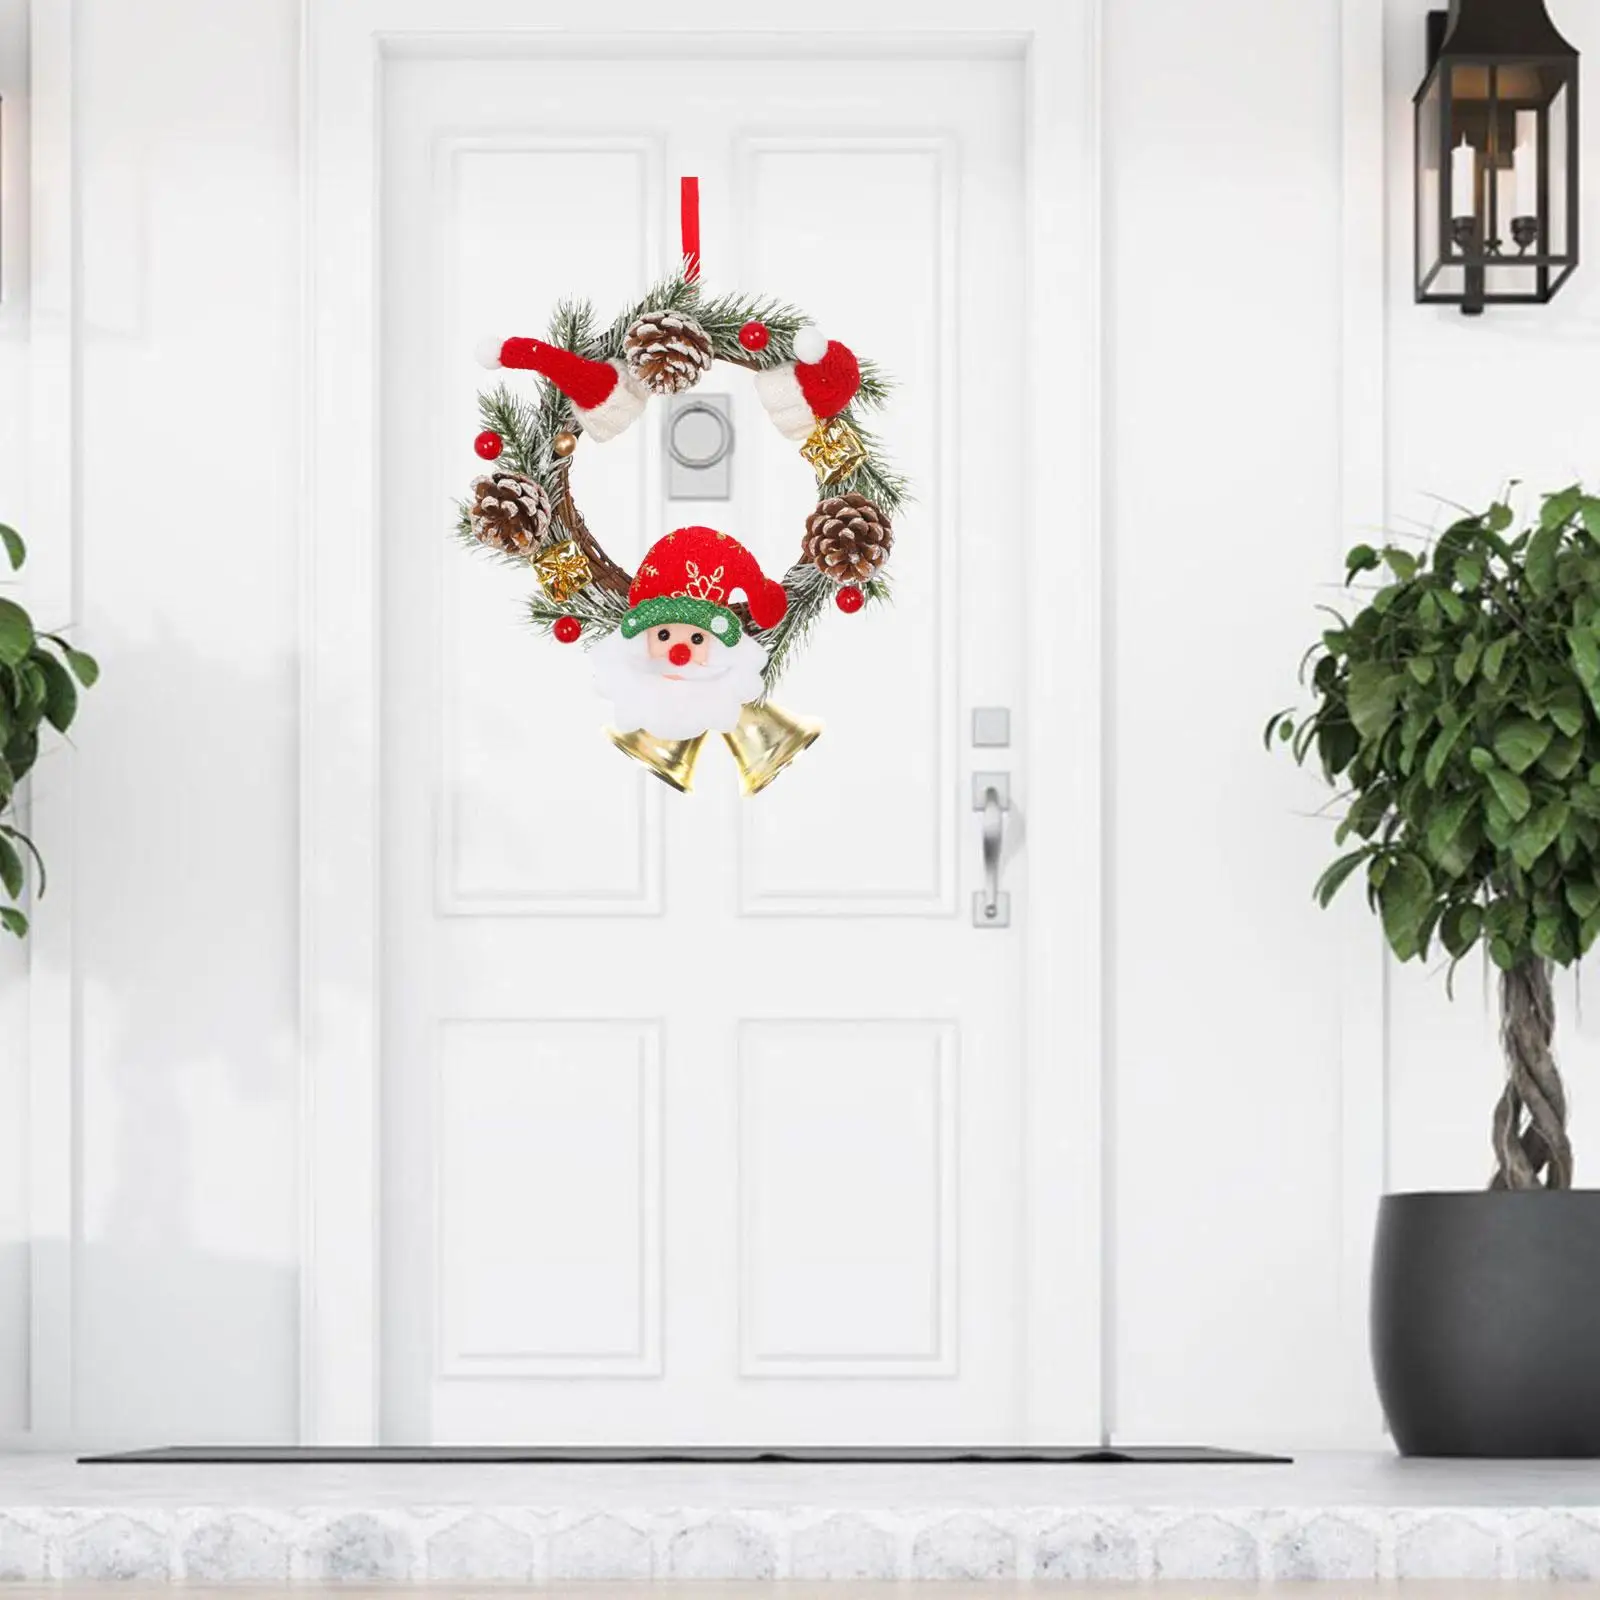 Door Hanging Christmas Wreath Ornament Front Door Wreath Hanging Door Garland Xmas Wreath for Window Home Door Porch Decoration